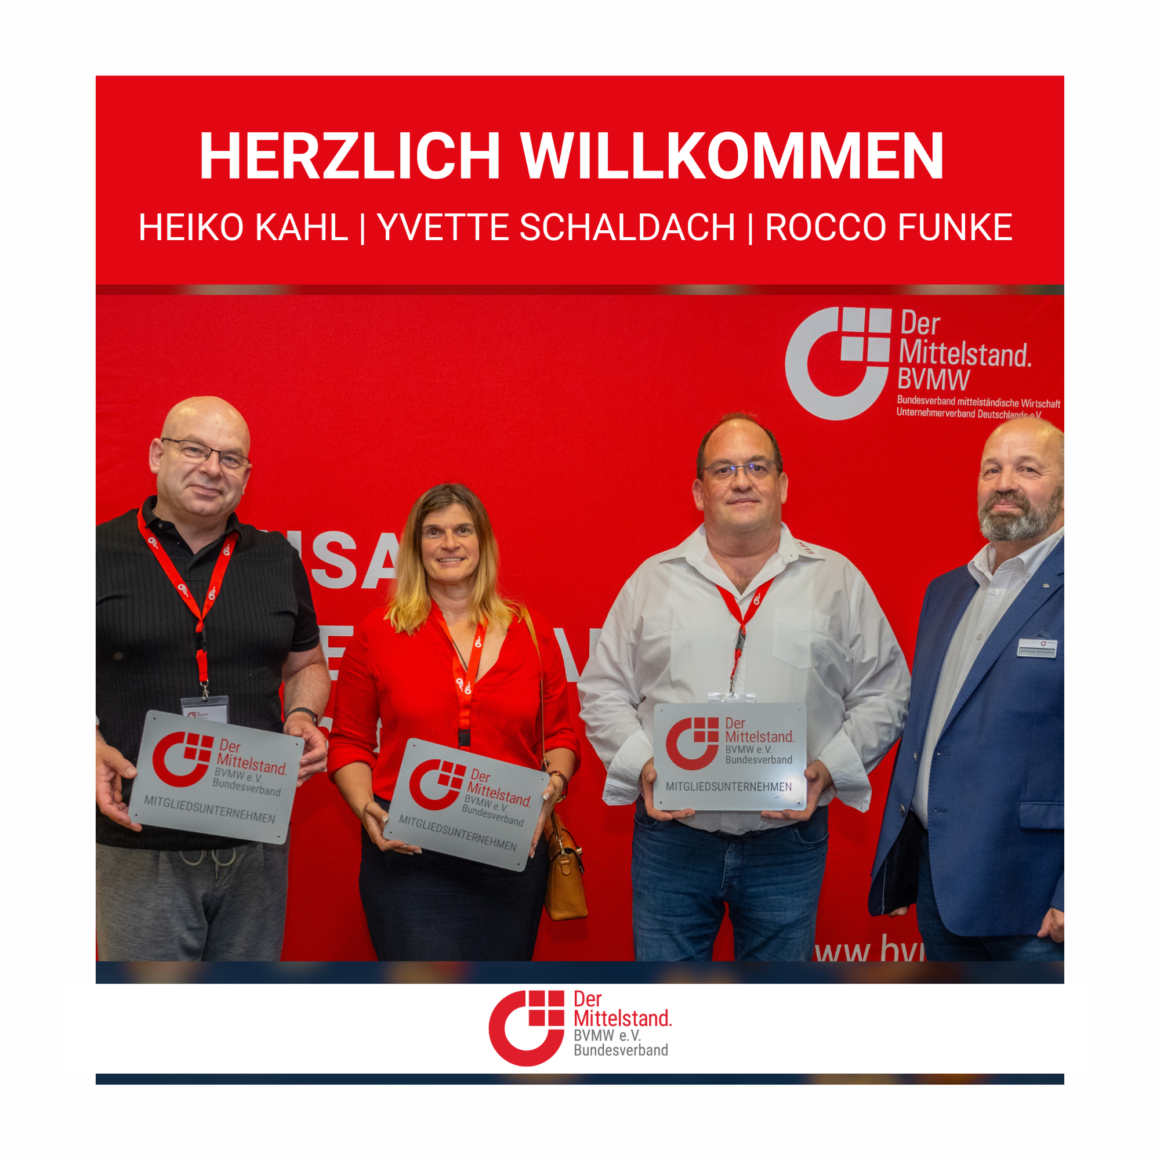 Herzlich willkommen Heiko Kahl | Yvette Schaldach | Rocco Funke